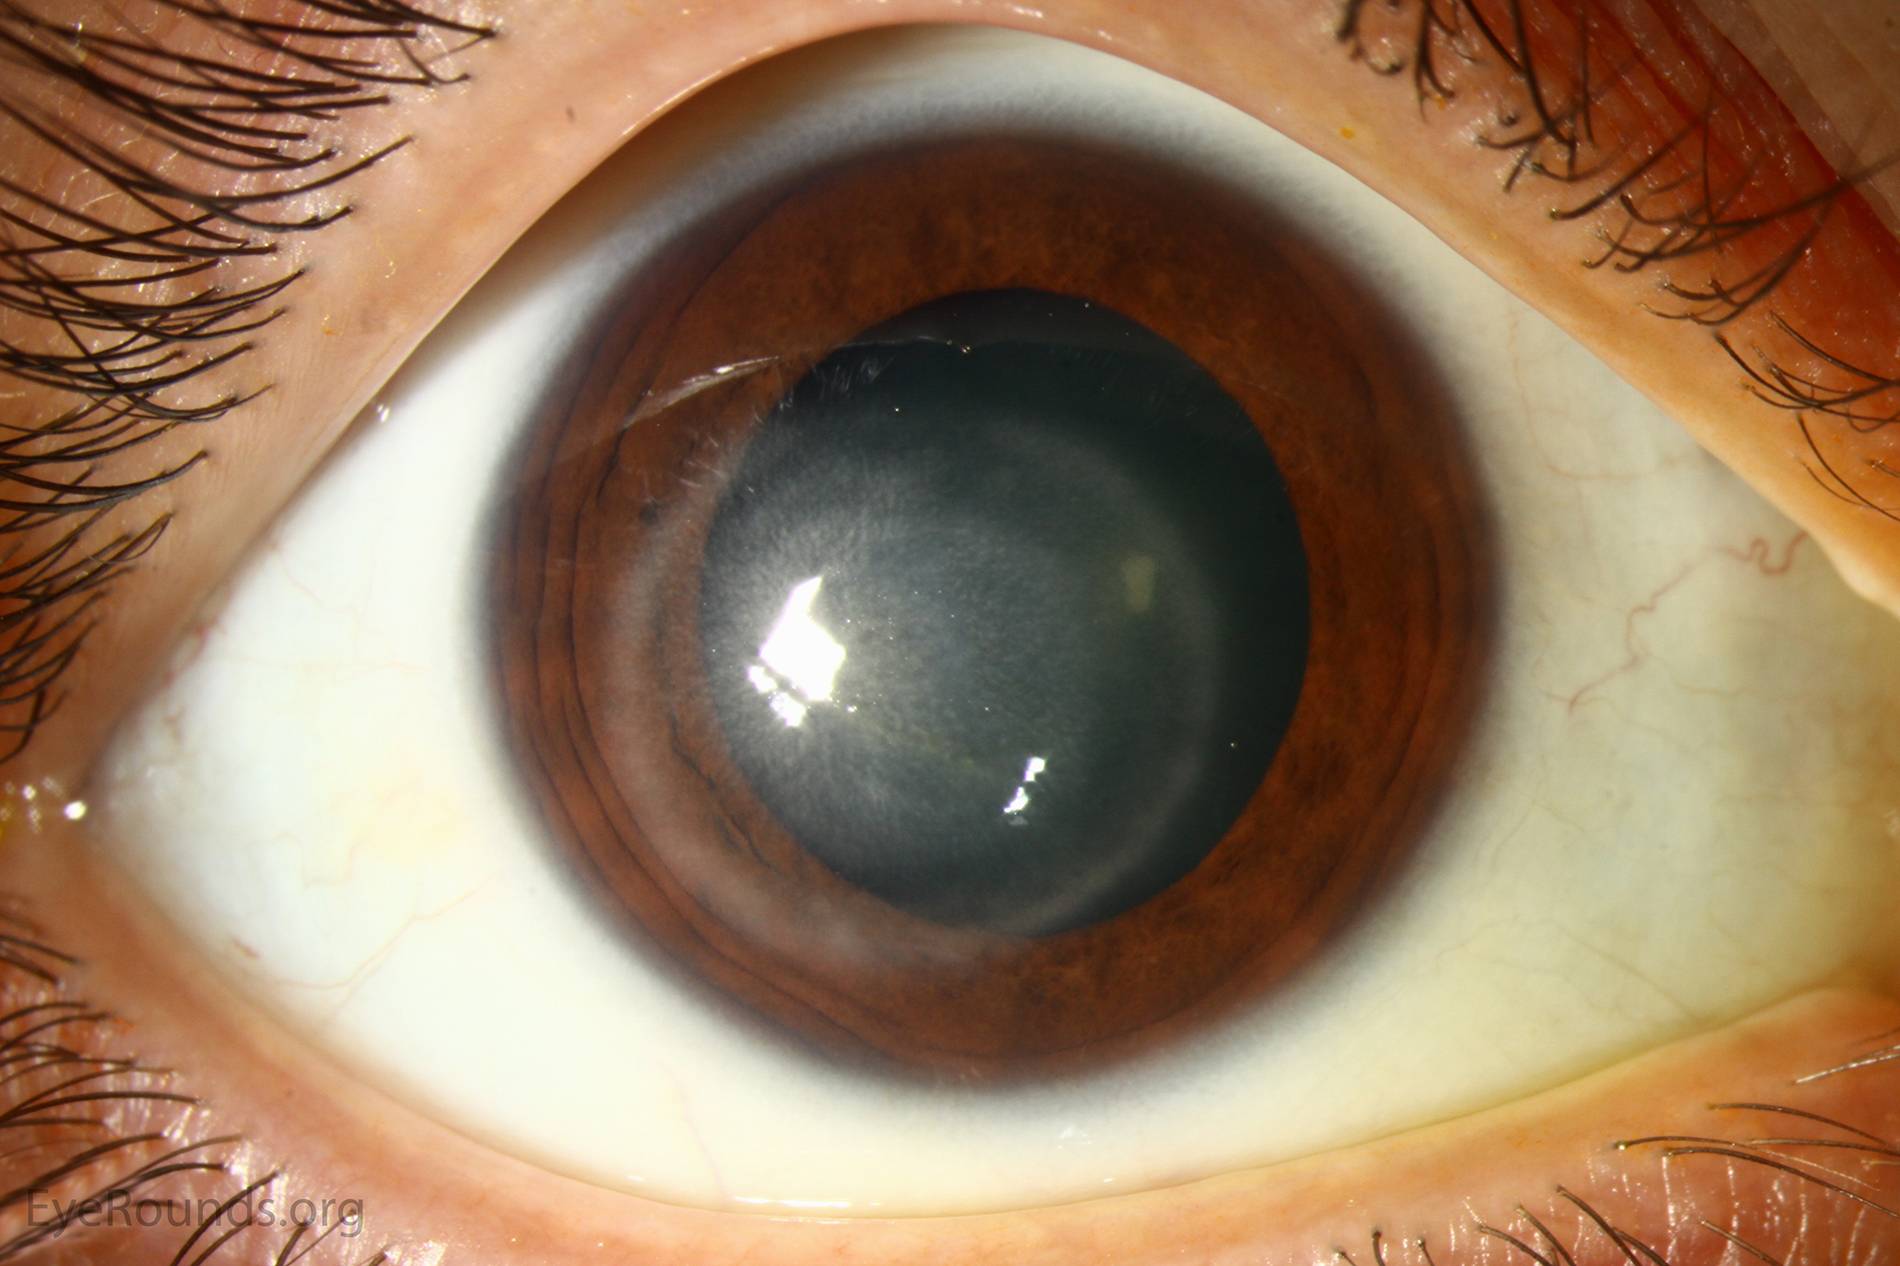 Воспаление роговицы глаза: симптомы и лечение - "здоровое око"